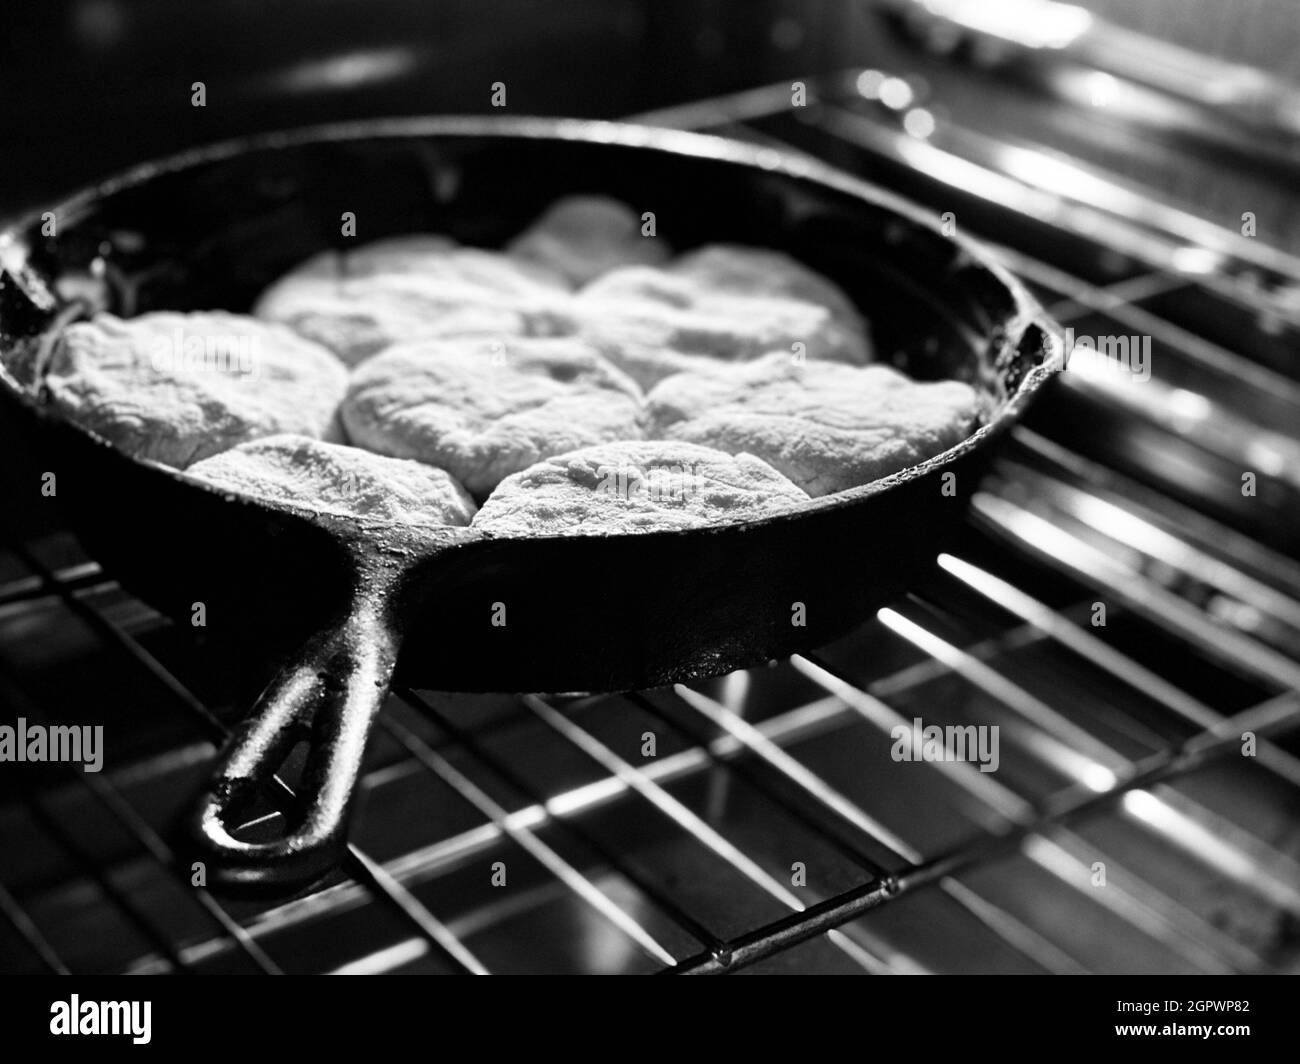 Omas hausgemachte Kekse in Einer gusseisernen Pfanne Stockfotografie - Alamy